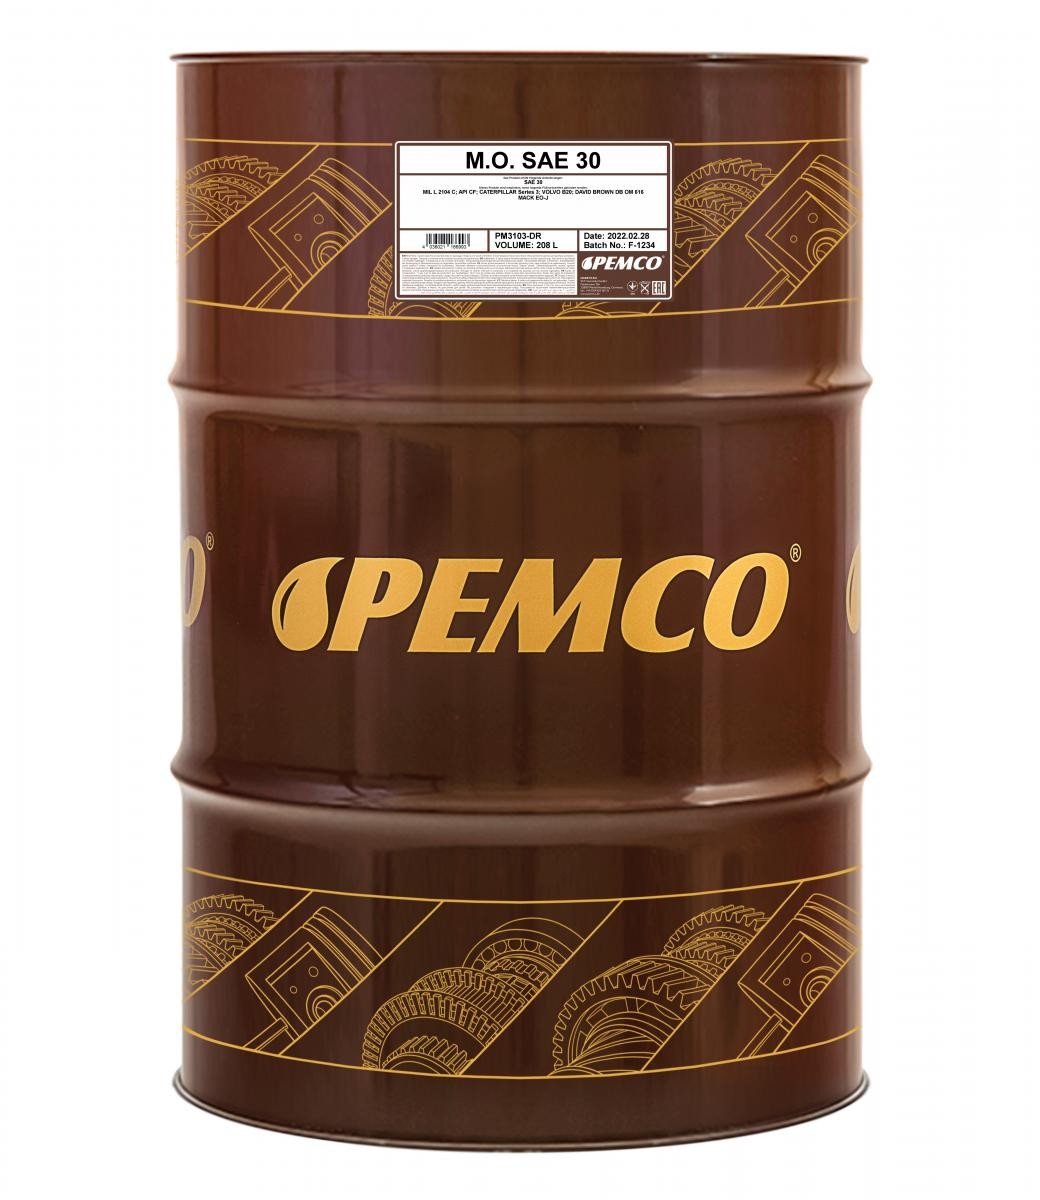 Engine oil SAE 30 longlife petrol - PM3103-DR PEMCO M.O. SAE 30